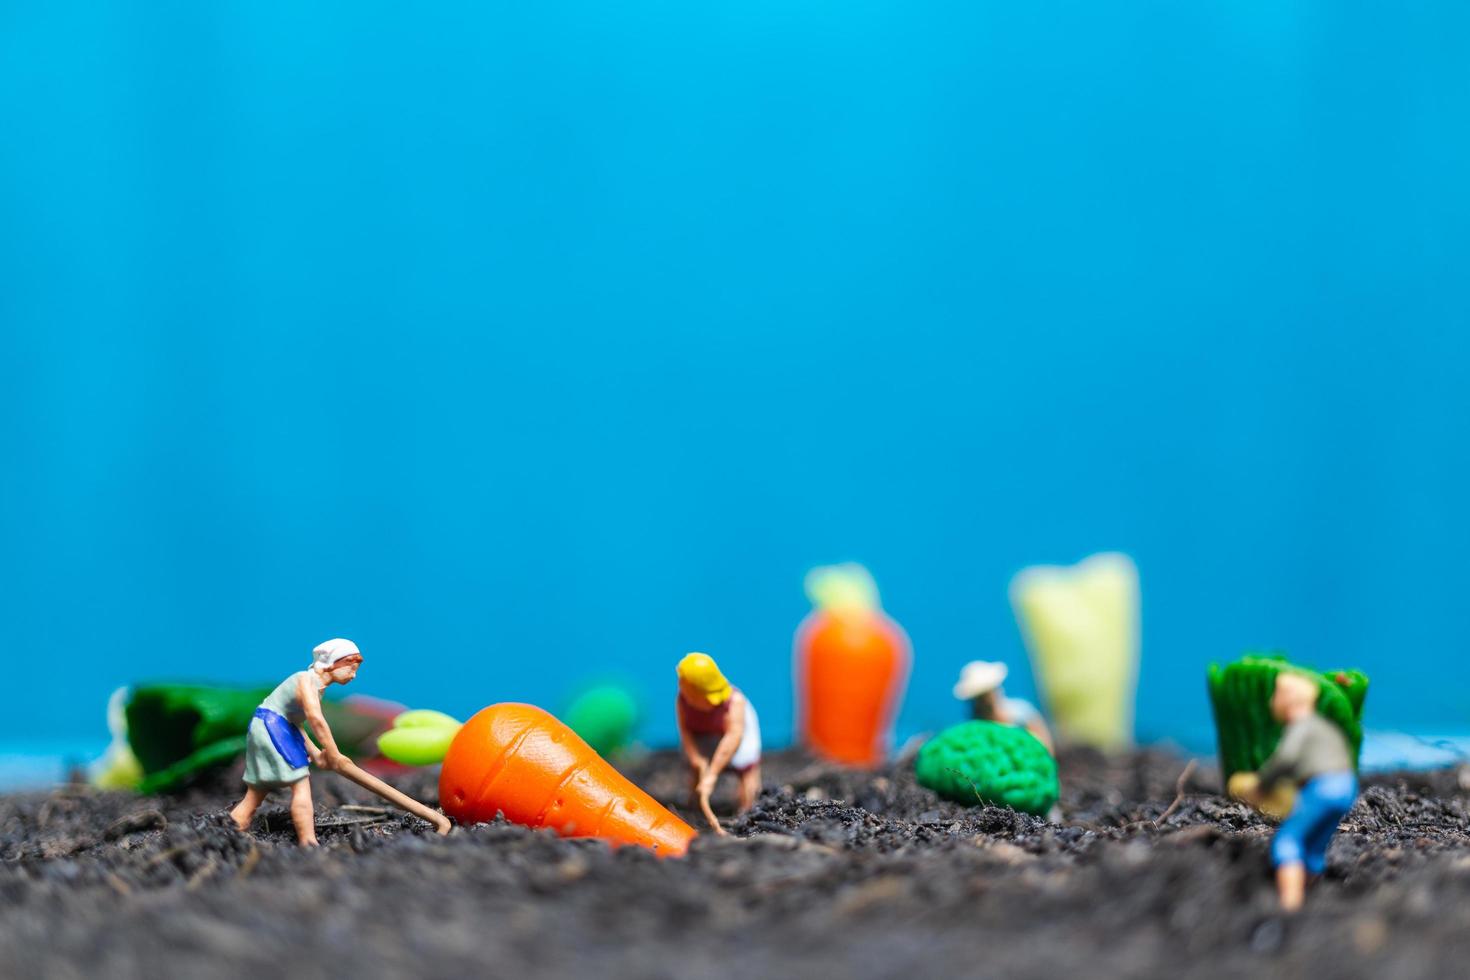 Jardineros en miniatura cosechando hortalizas, concepto agrícola foto